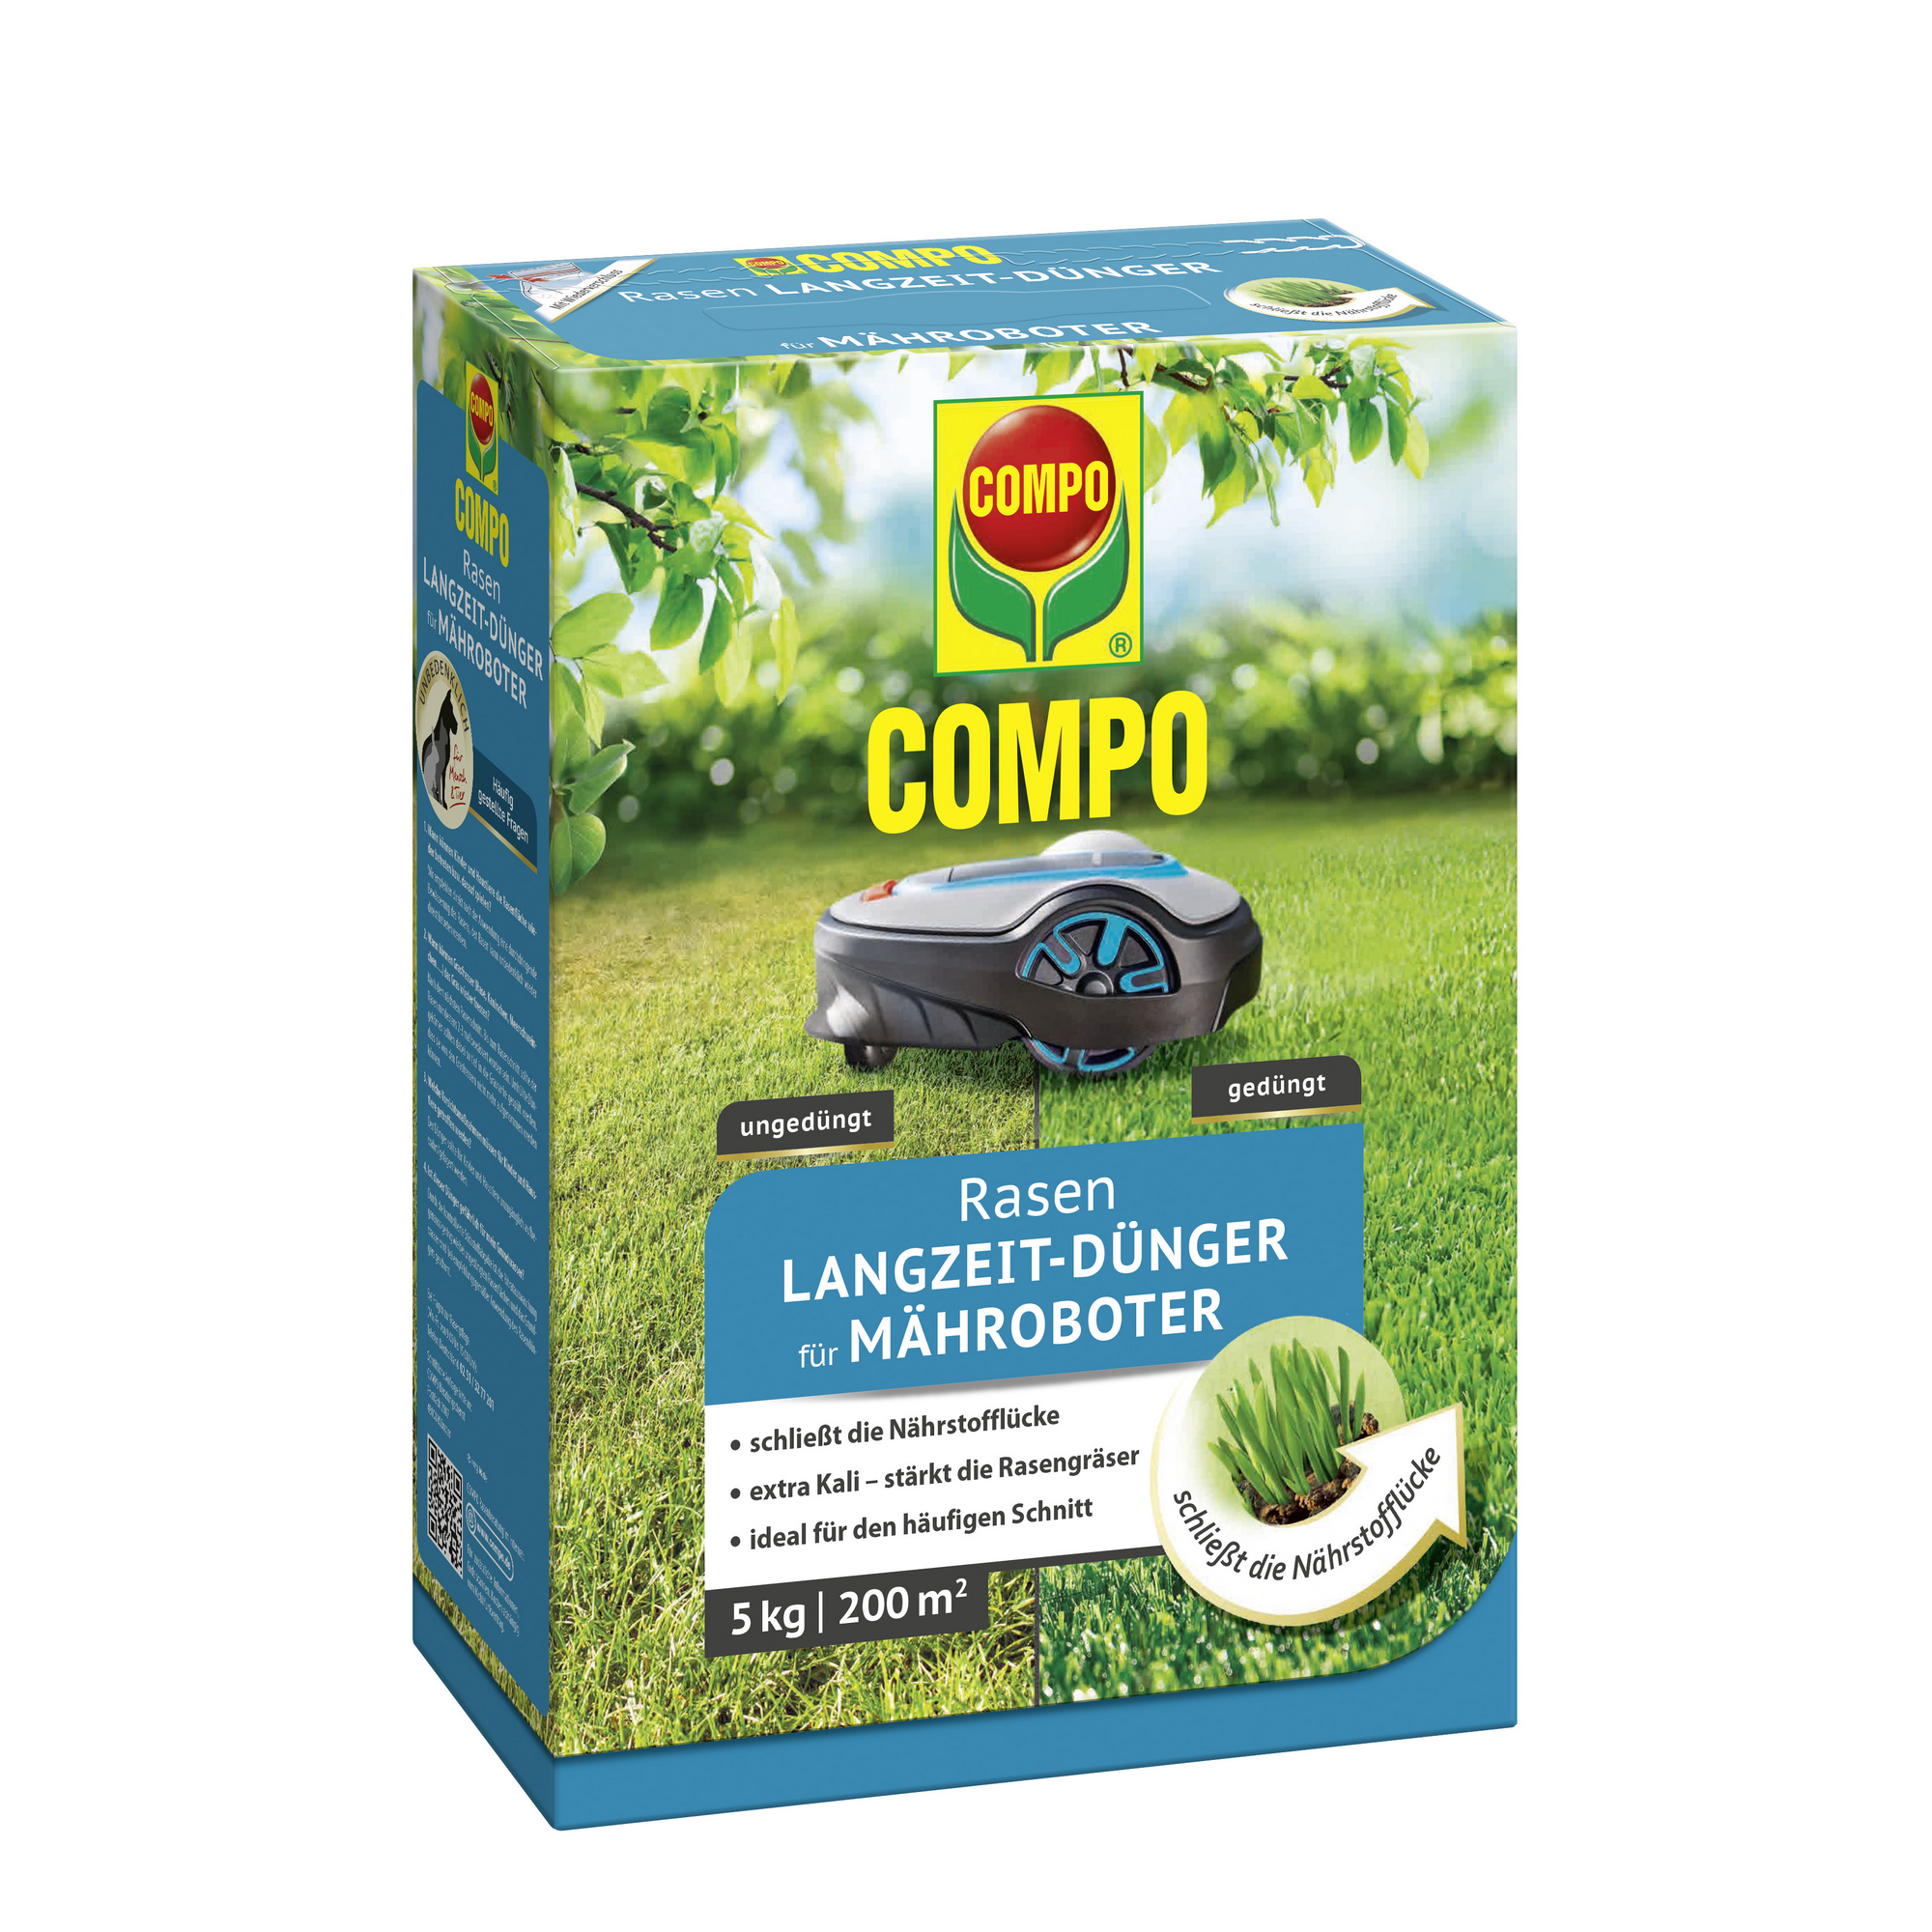 Rasen Langzeit-Dünger für Mähroboter 5 kg + product picture